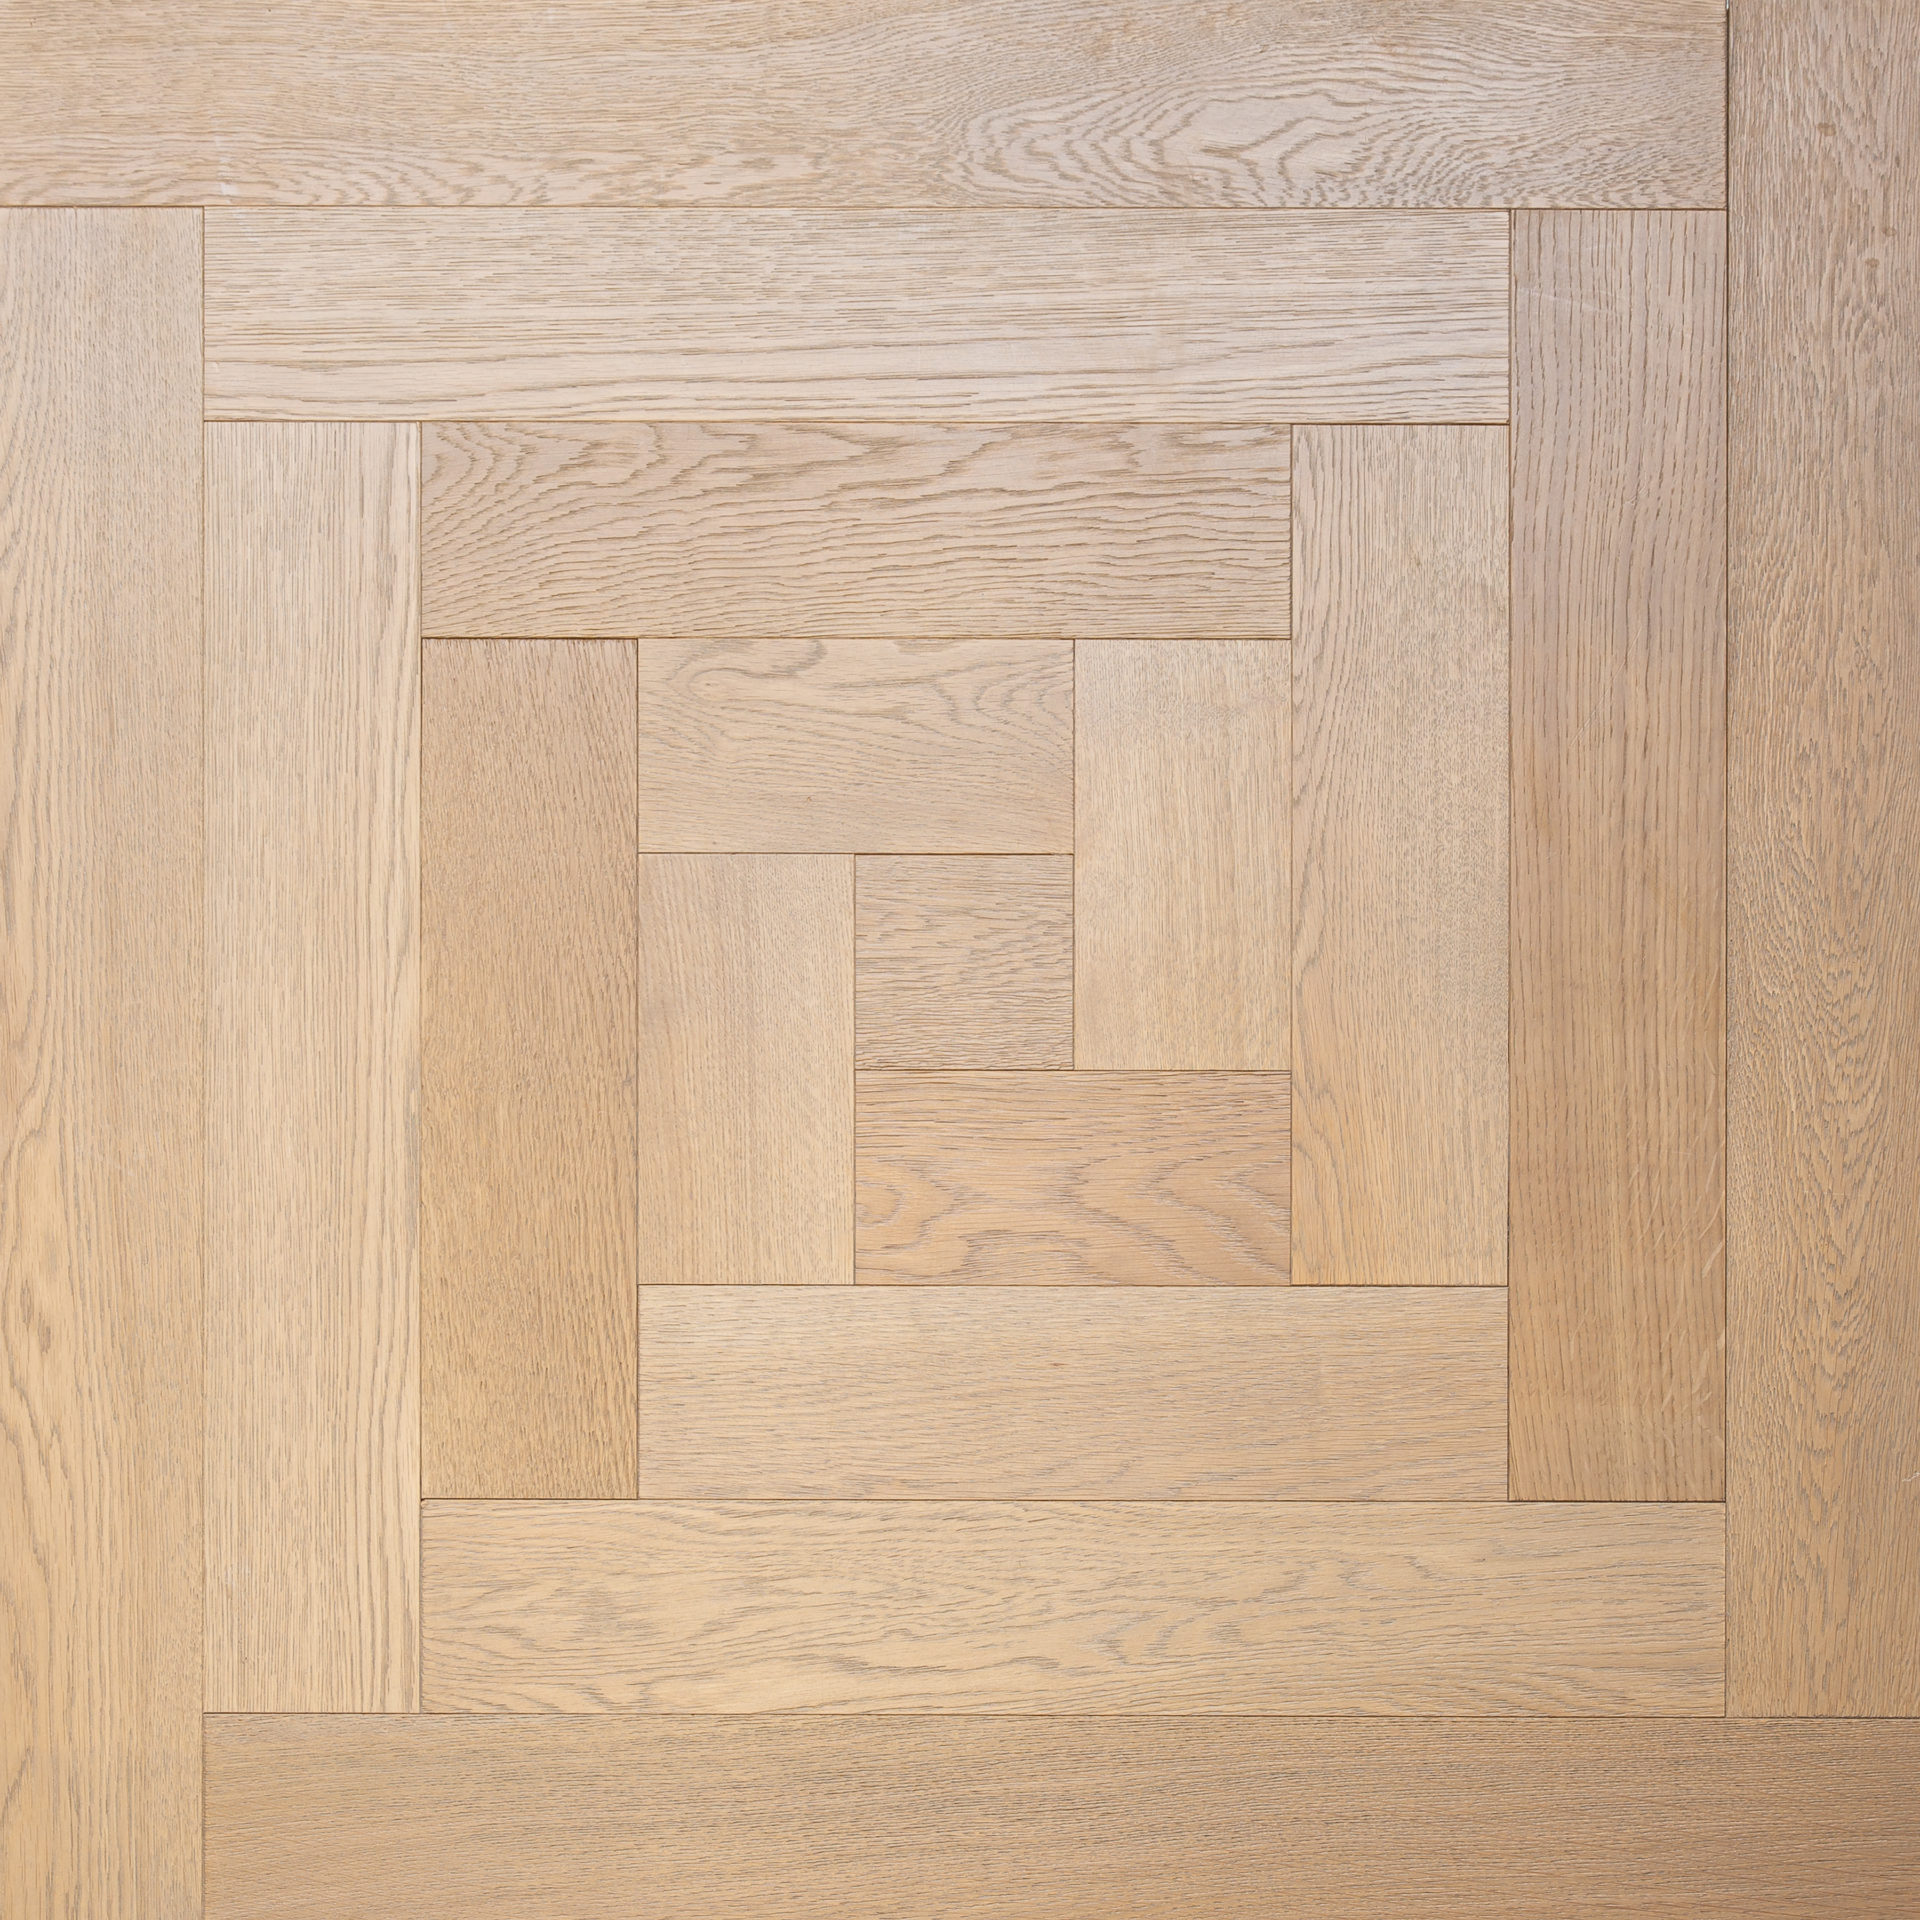 Wood Parquet Flooring - square